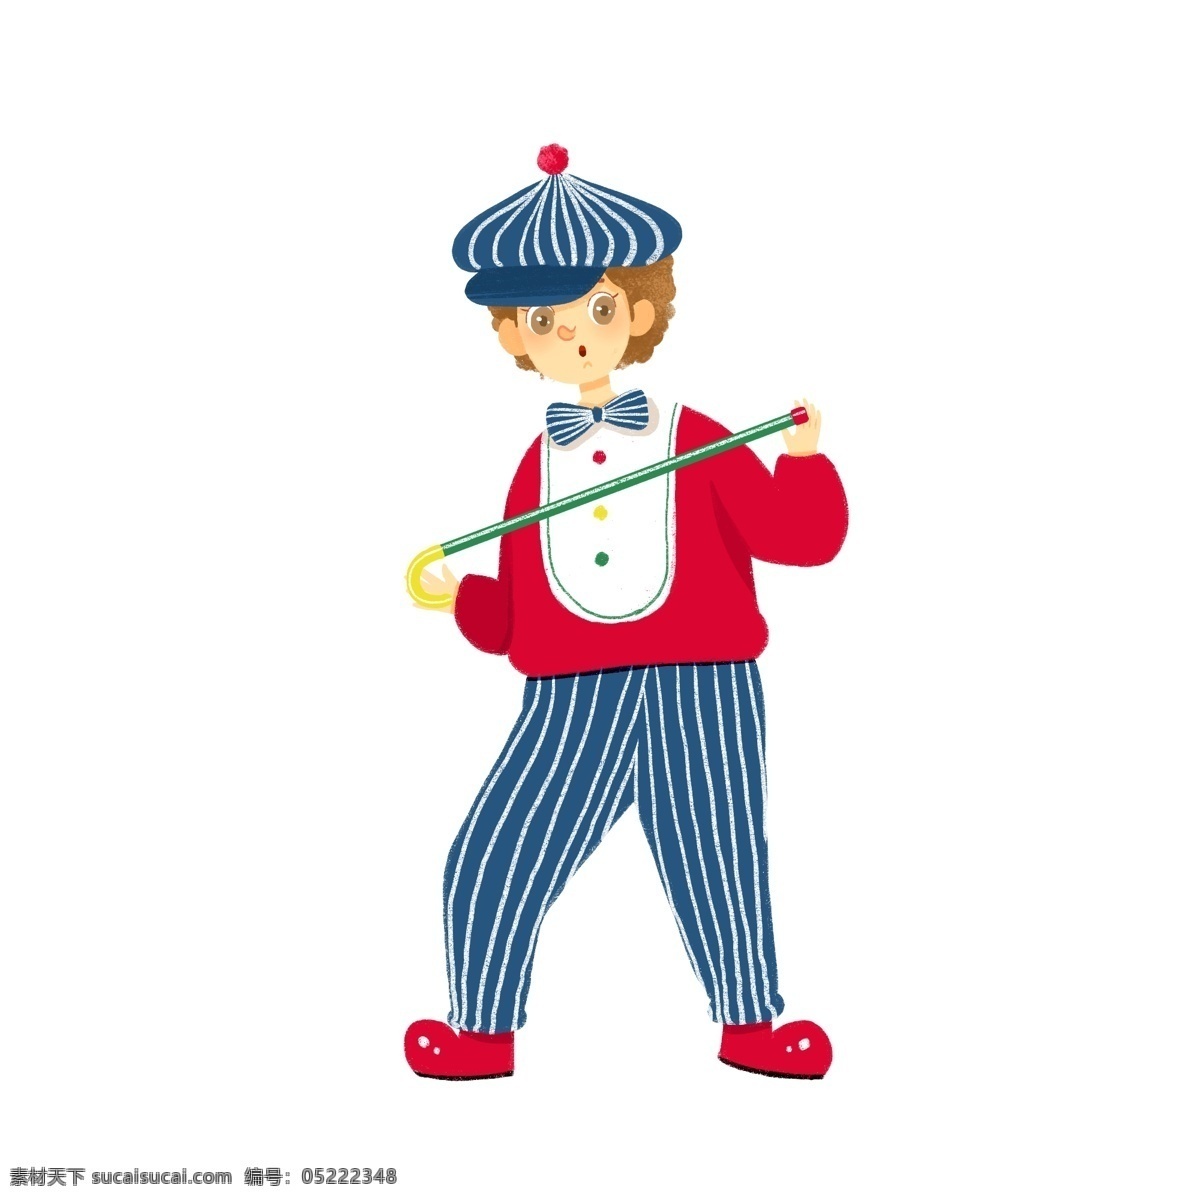 愚人节 正在 表演 小丑 滑稽 搞笑 可爱 卡通 人物 男孩 男生 夸张造型 喜剧 玩笑 领结 红色 蓝色 帽子